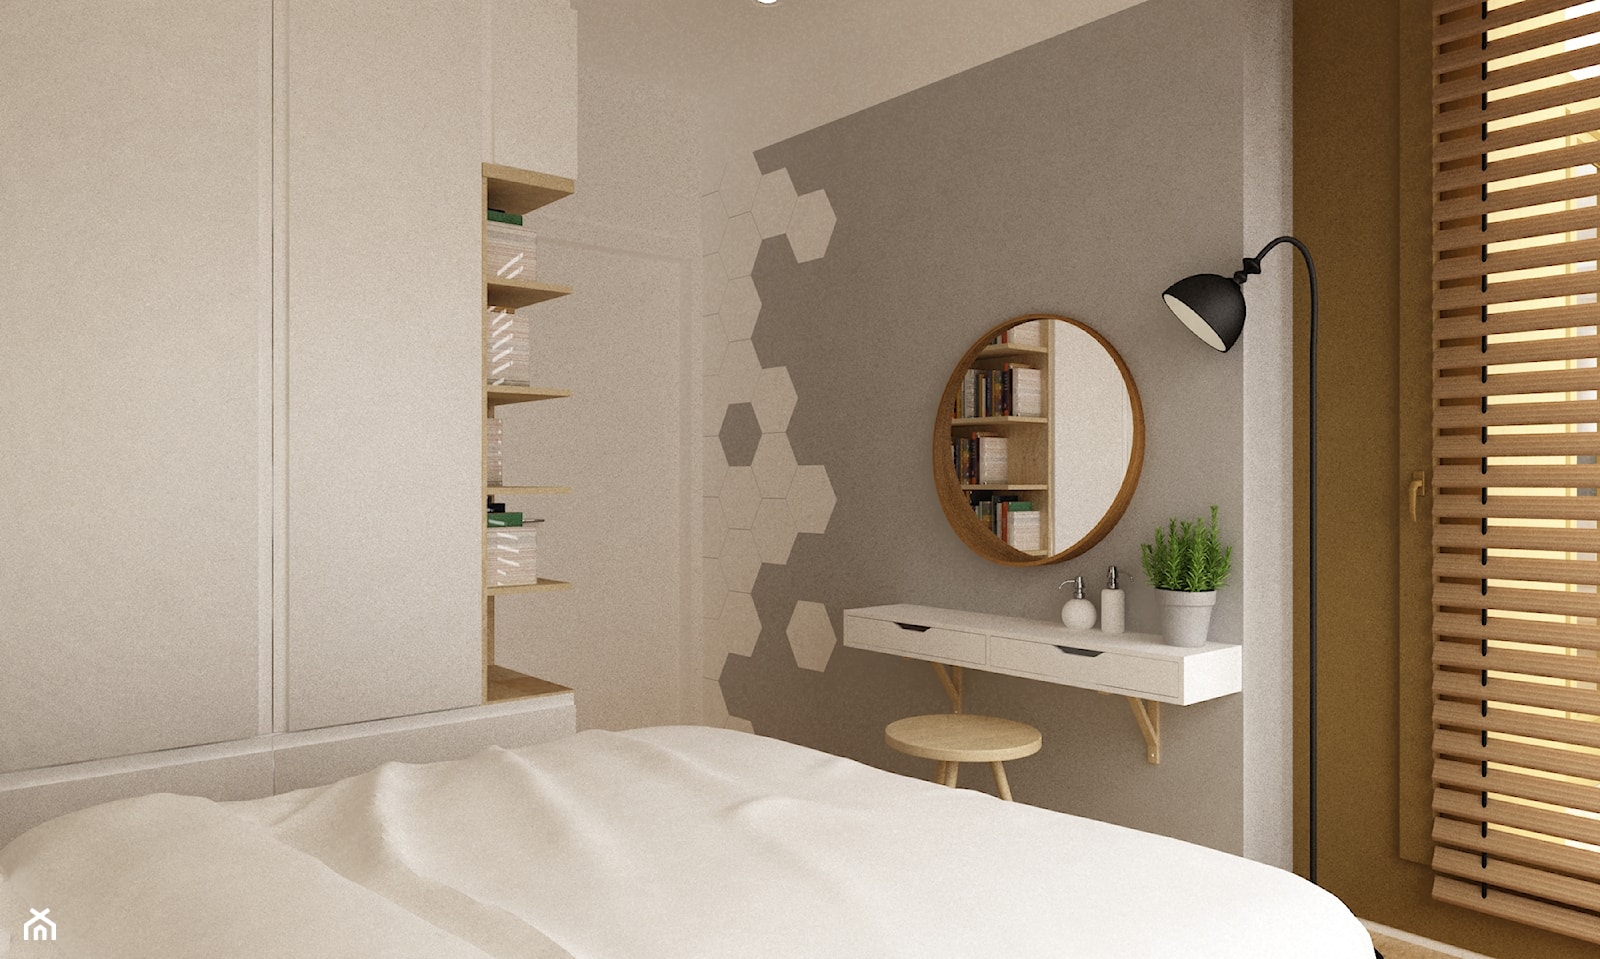 mieszkanie na ochocie 50m2 kolor biel,szarość,dąb - Mała biała szara sypialnia, styl nowoczesny - zdjęcie od Grafika i Projekt architektura wnętrz - Homebook